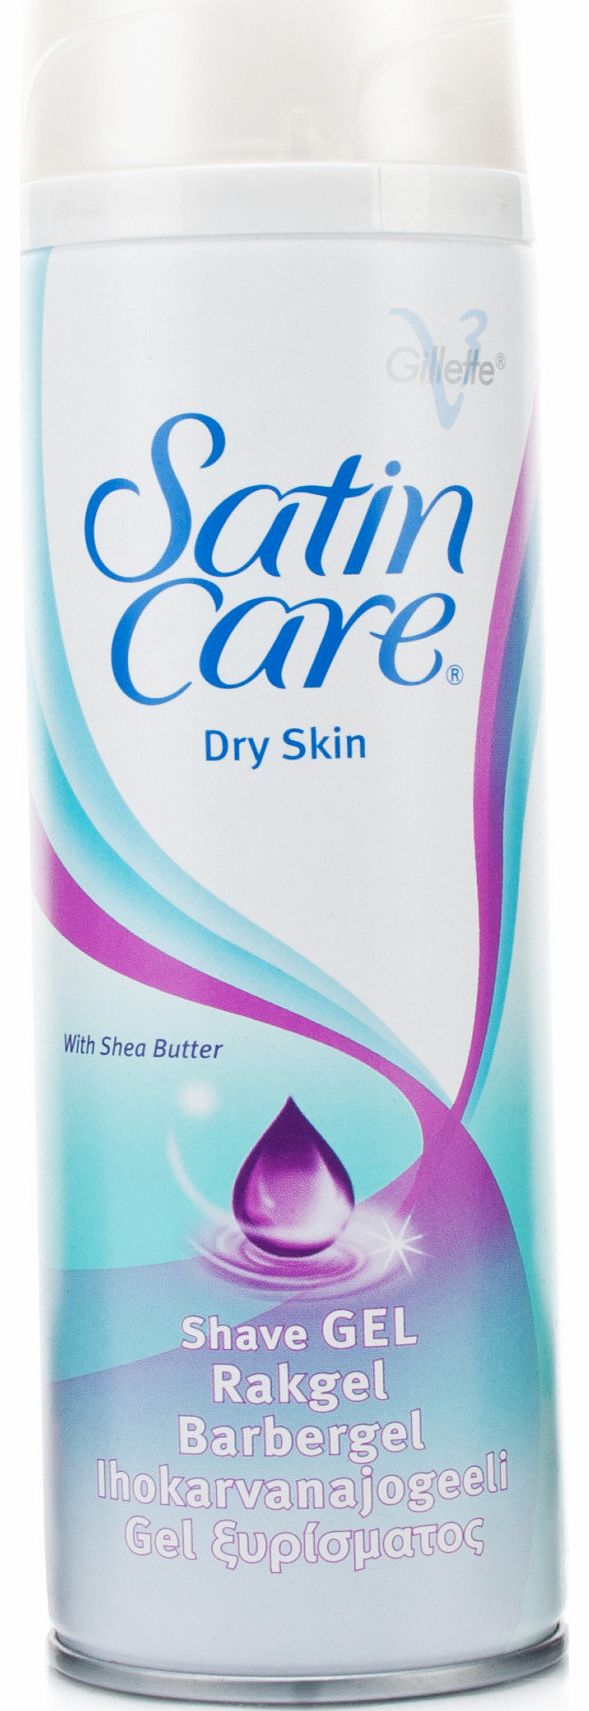 Gillette Satin Care Dry Skin Shave Gel